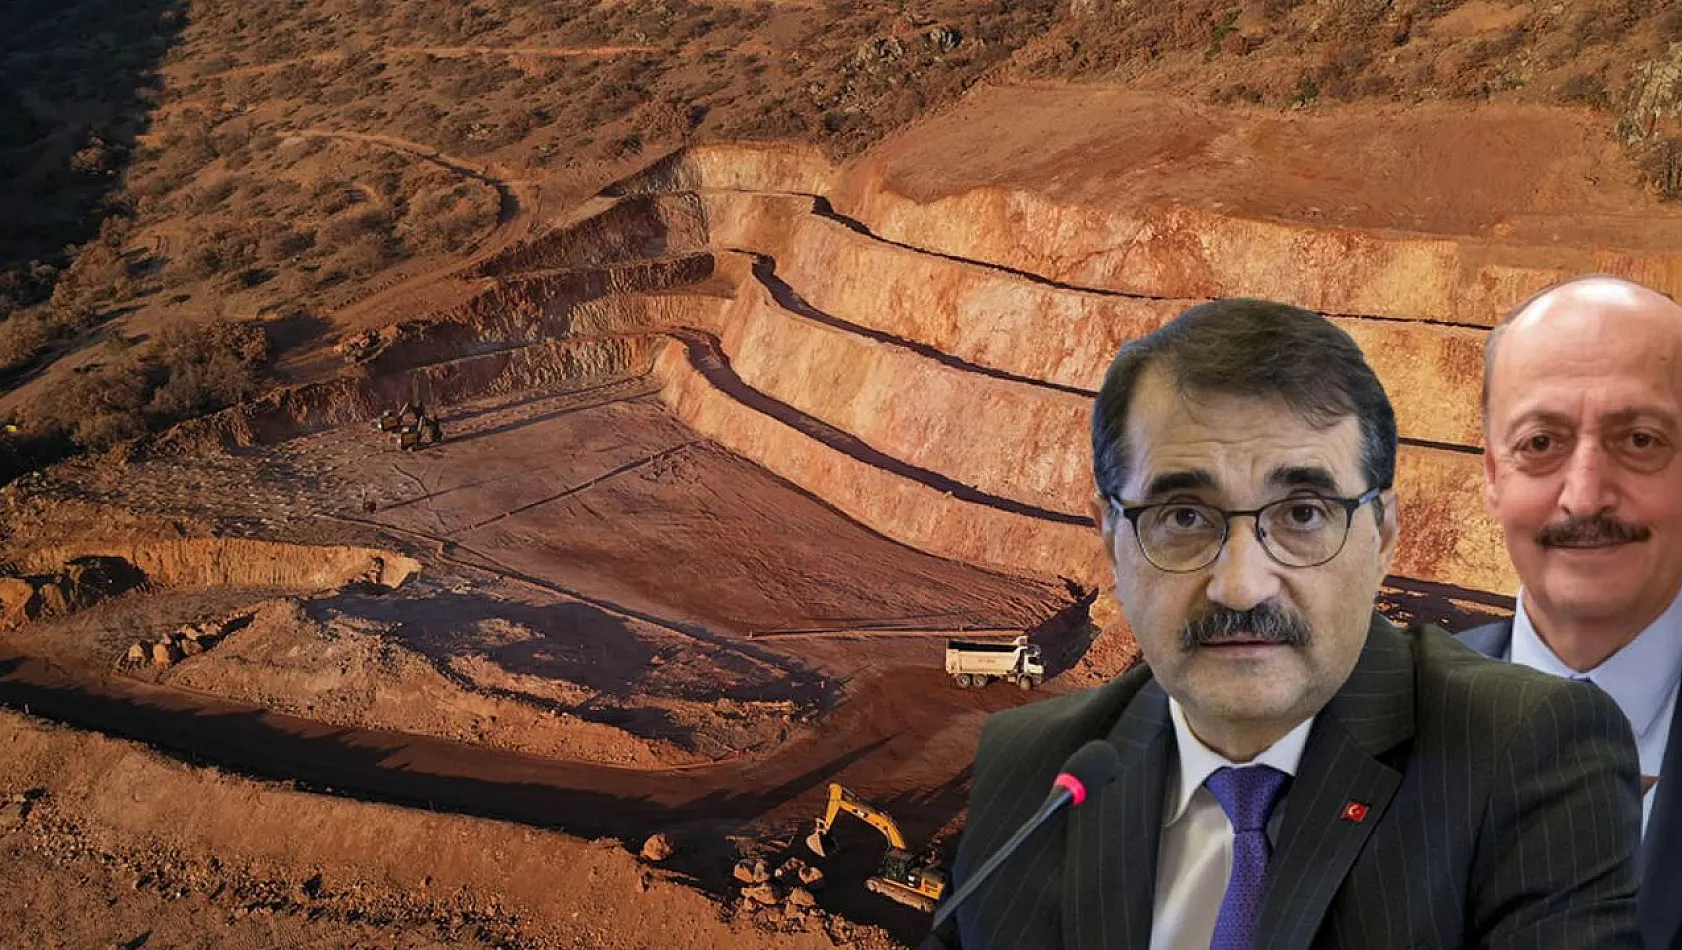 Bakan açıkladı, meğer Kayseri'deki o maden ocağında inceleme yapılmış! Peki, sonuç ne?